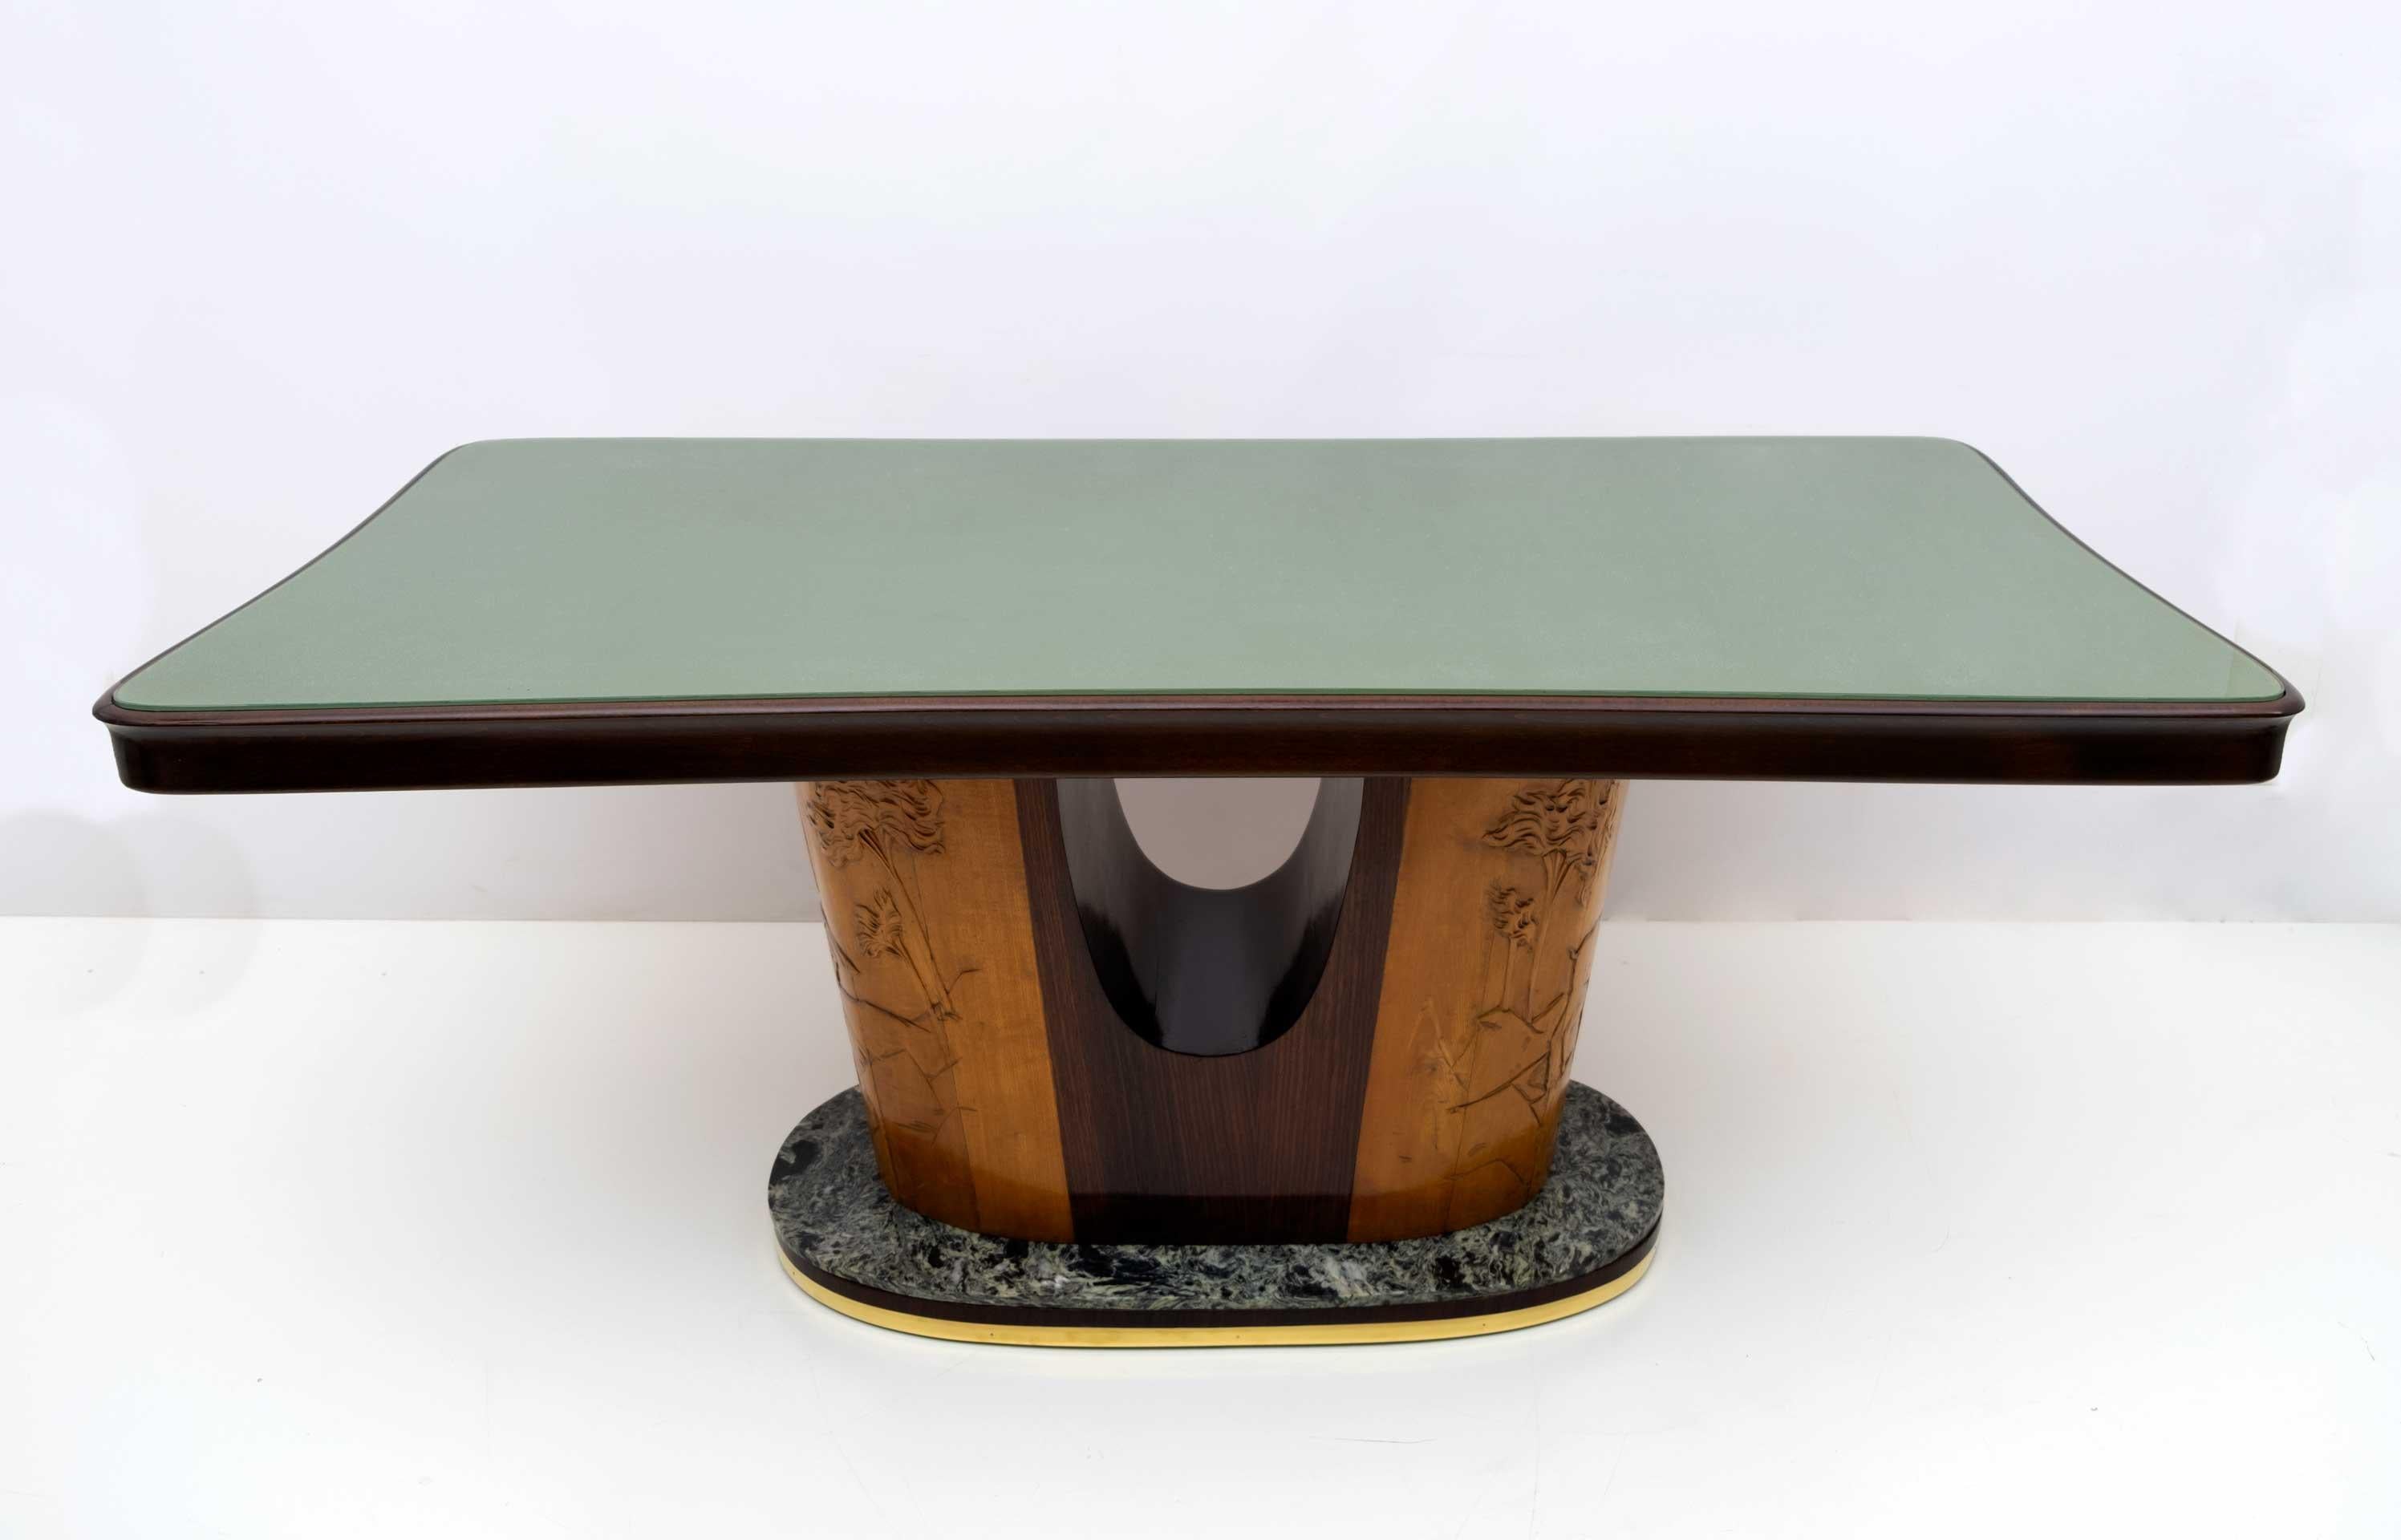 Magnifique table conçue par le célèbre designer italien de style Mid-Century Modern, Vittorio Dassi, 1950.
Les boiseries exceptionnelles sont mises en valeur par le plateau en verre vert incurvé et les bords arrondis de la structure. Cette pièce de